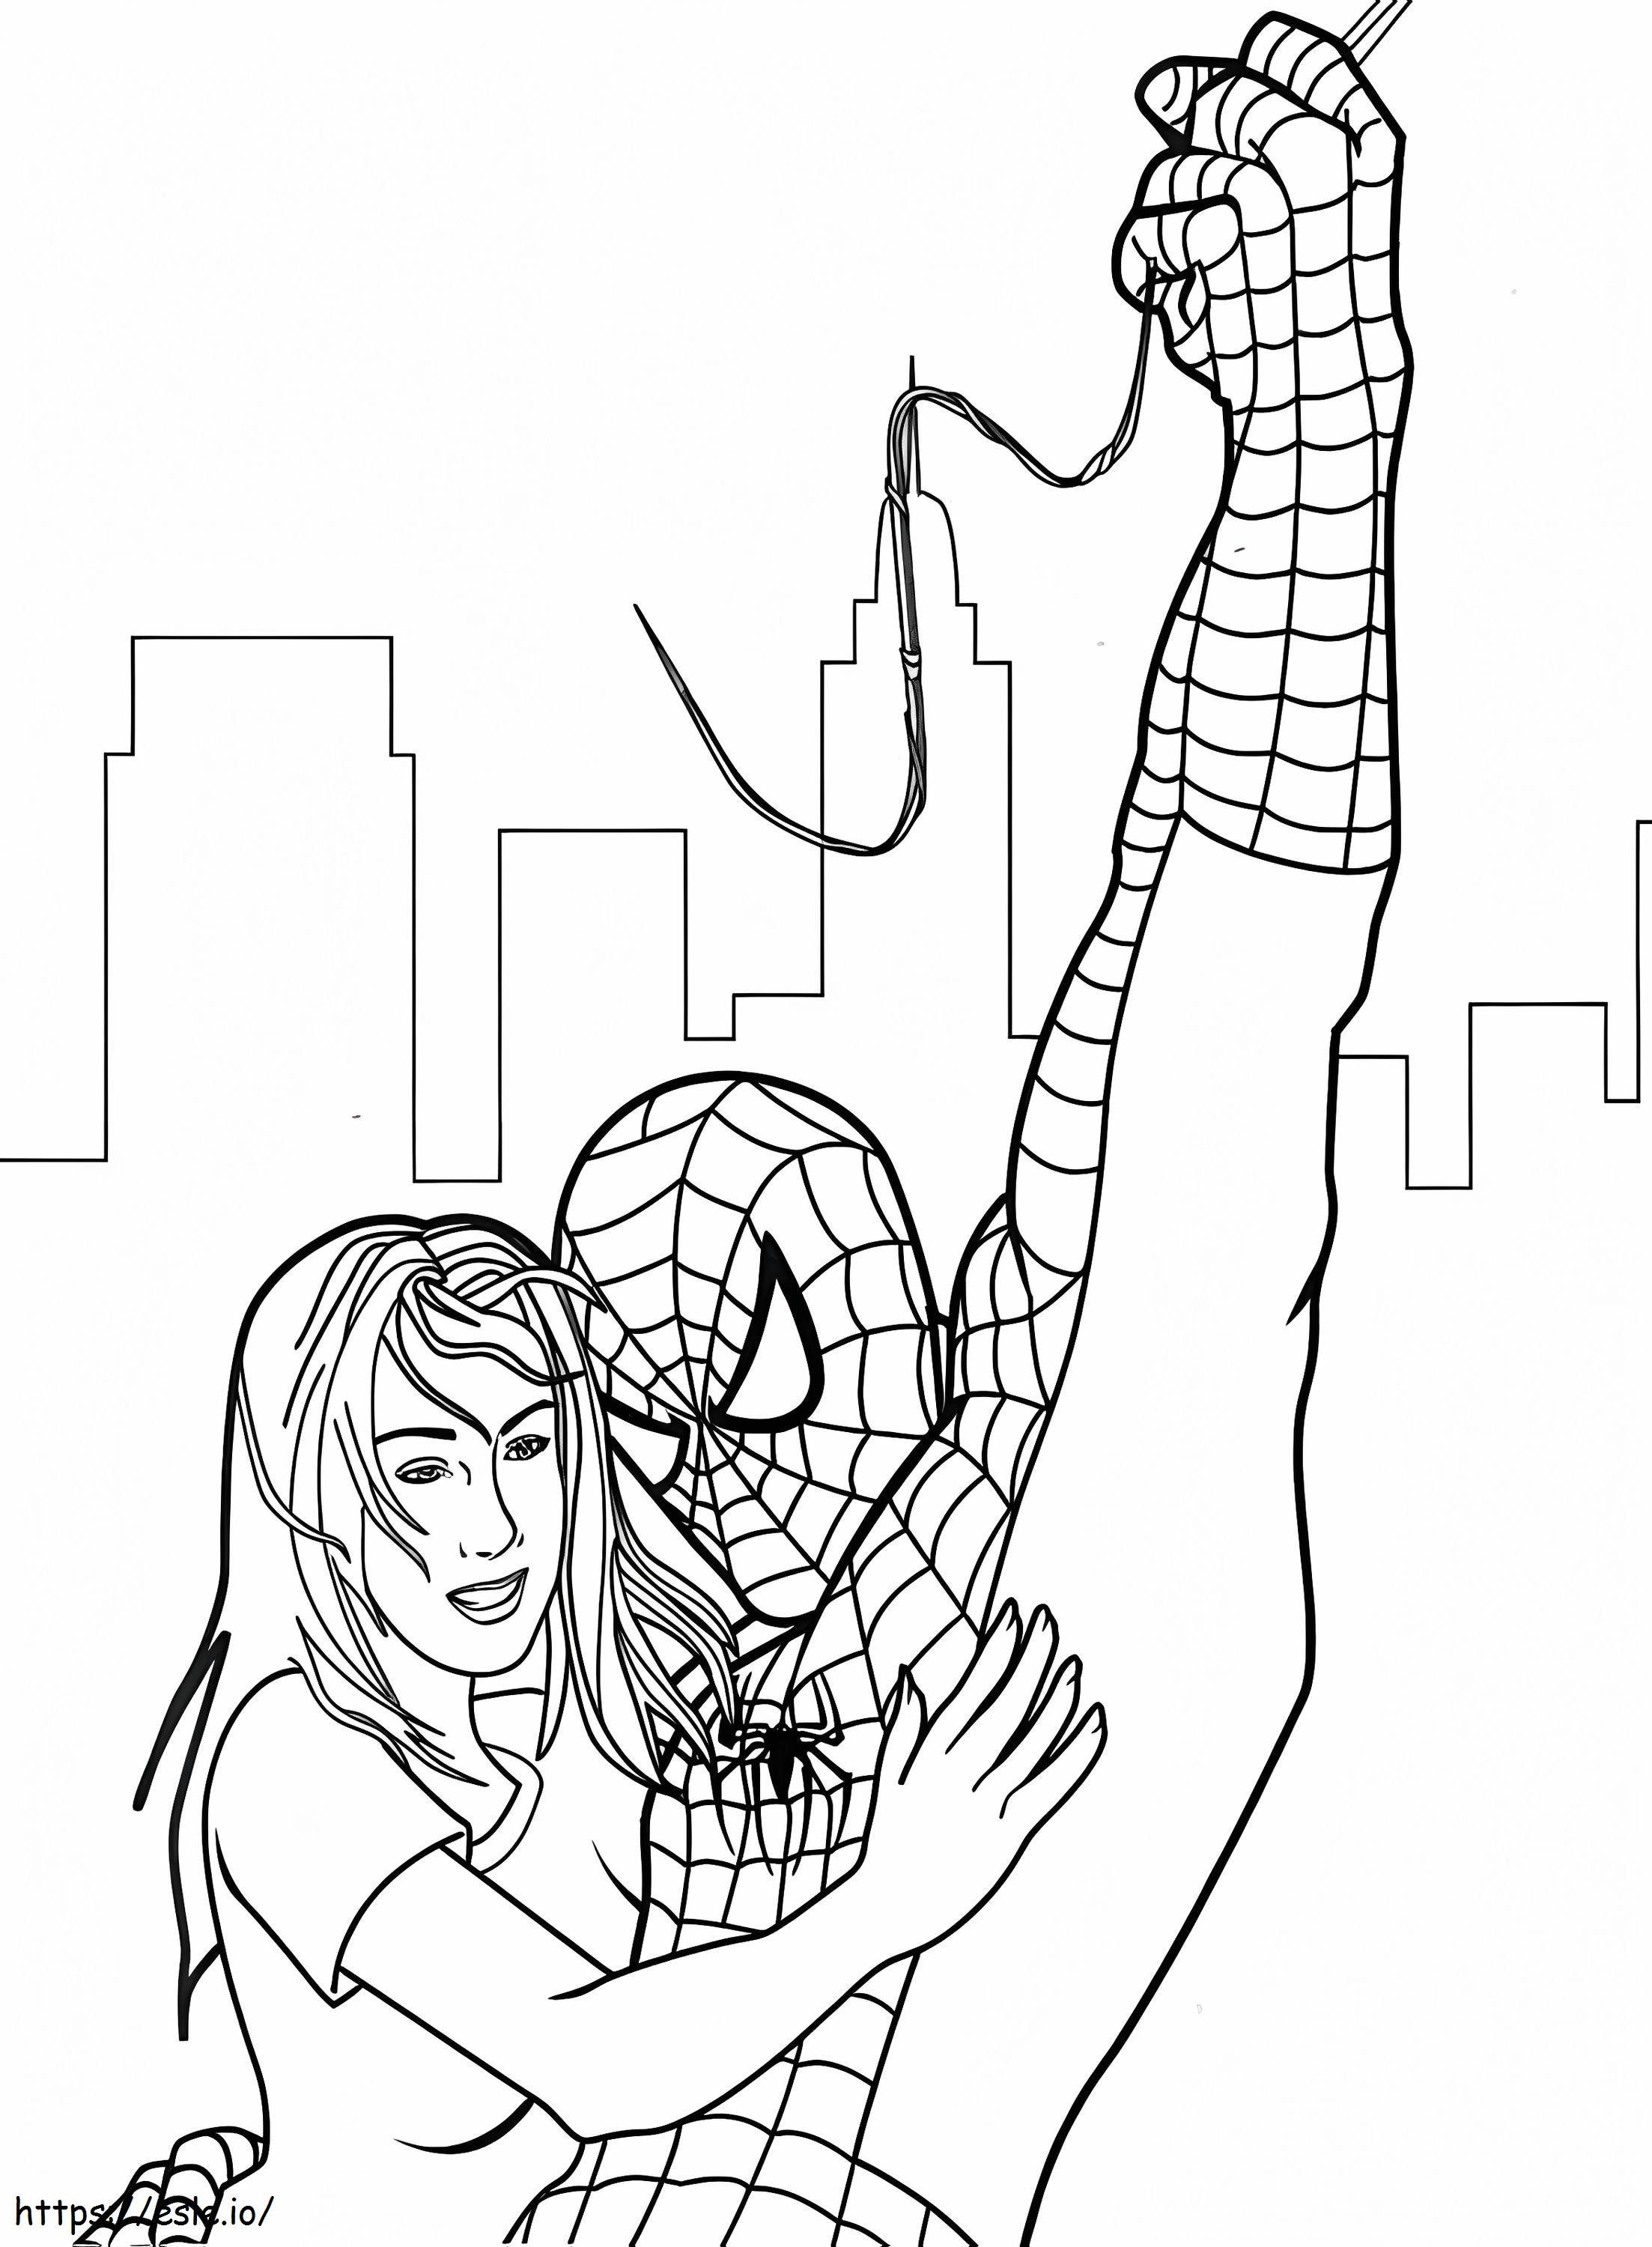 Homem-Aranha salva a garota para colorir